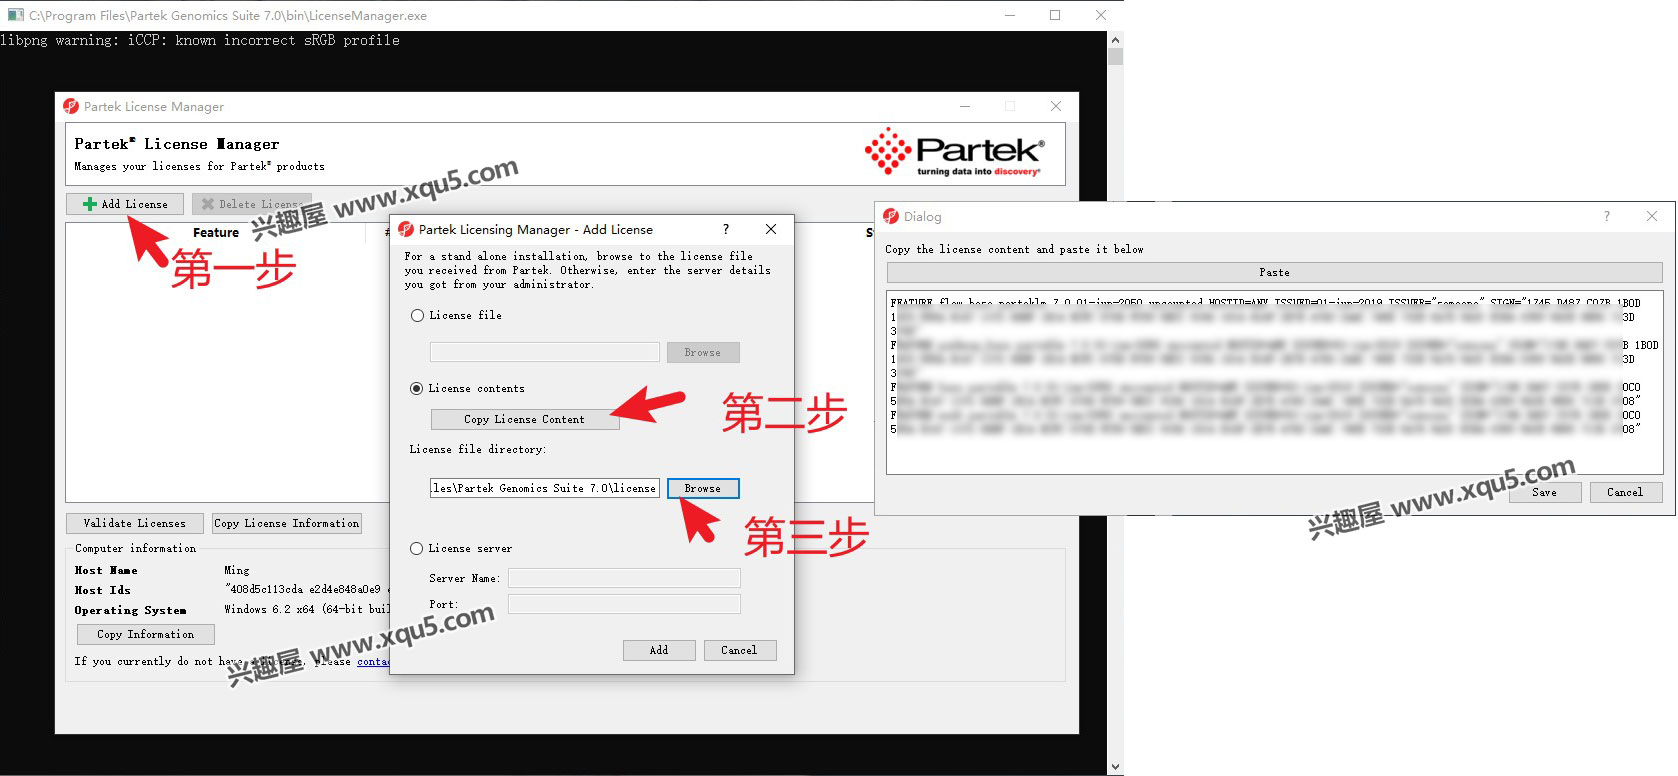 Partek-Genomics-Suite-3.jpg